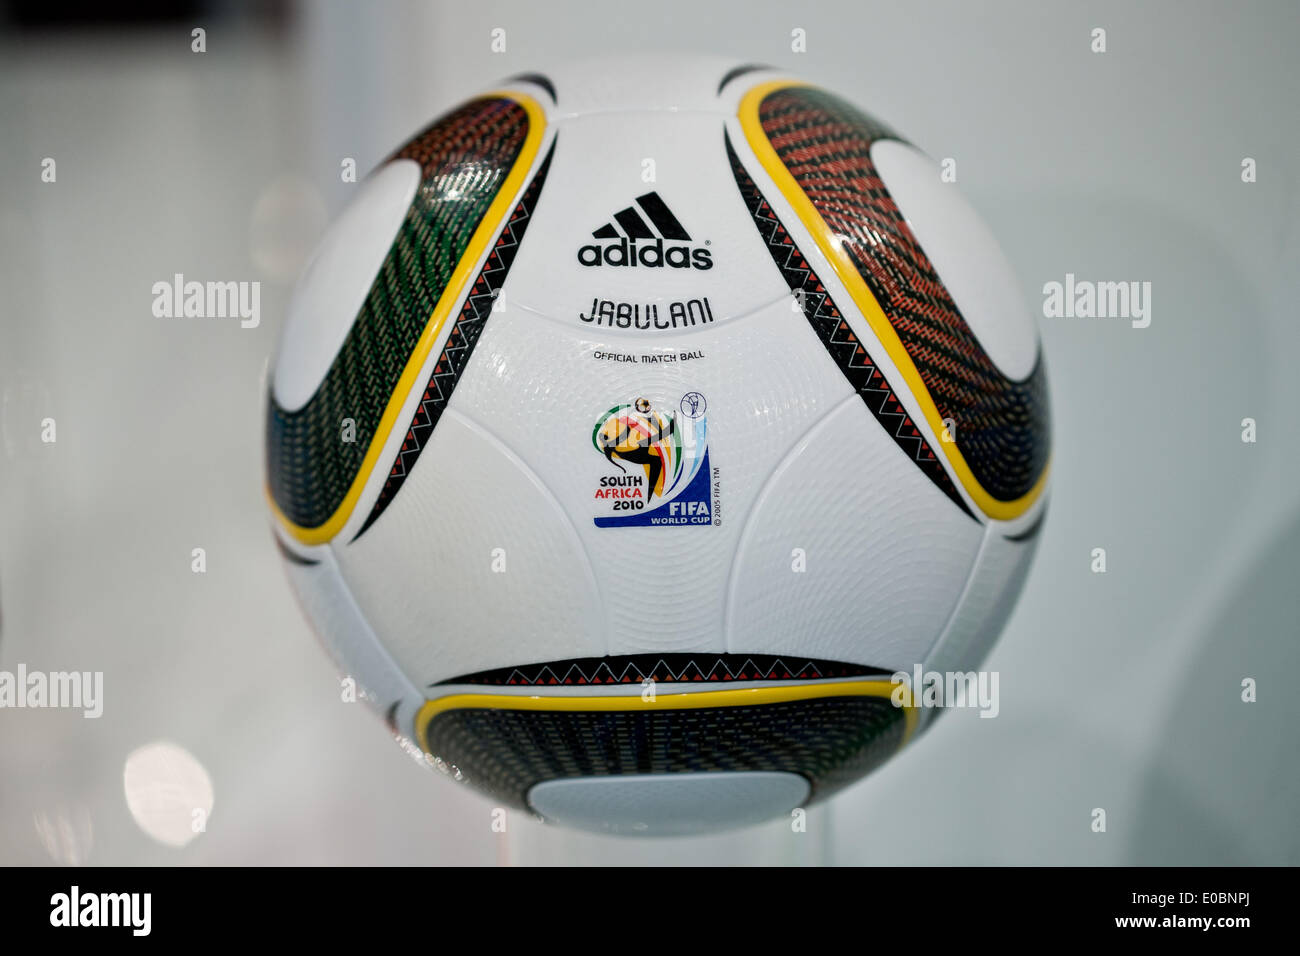 Le "Jabulani" ballon de football qui était le ballon officiel de la coupe  du monde de soccer 2010 en Afrique du Sud est représenté au cours de  l'assemblée générale du fabricant d'articles